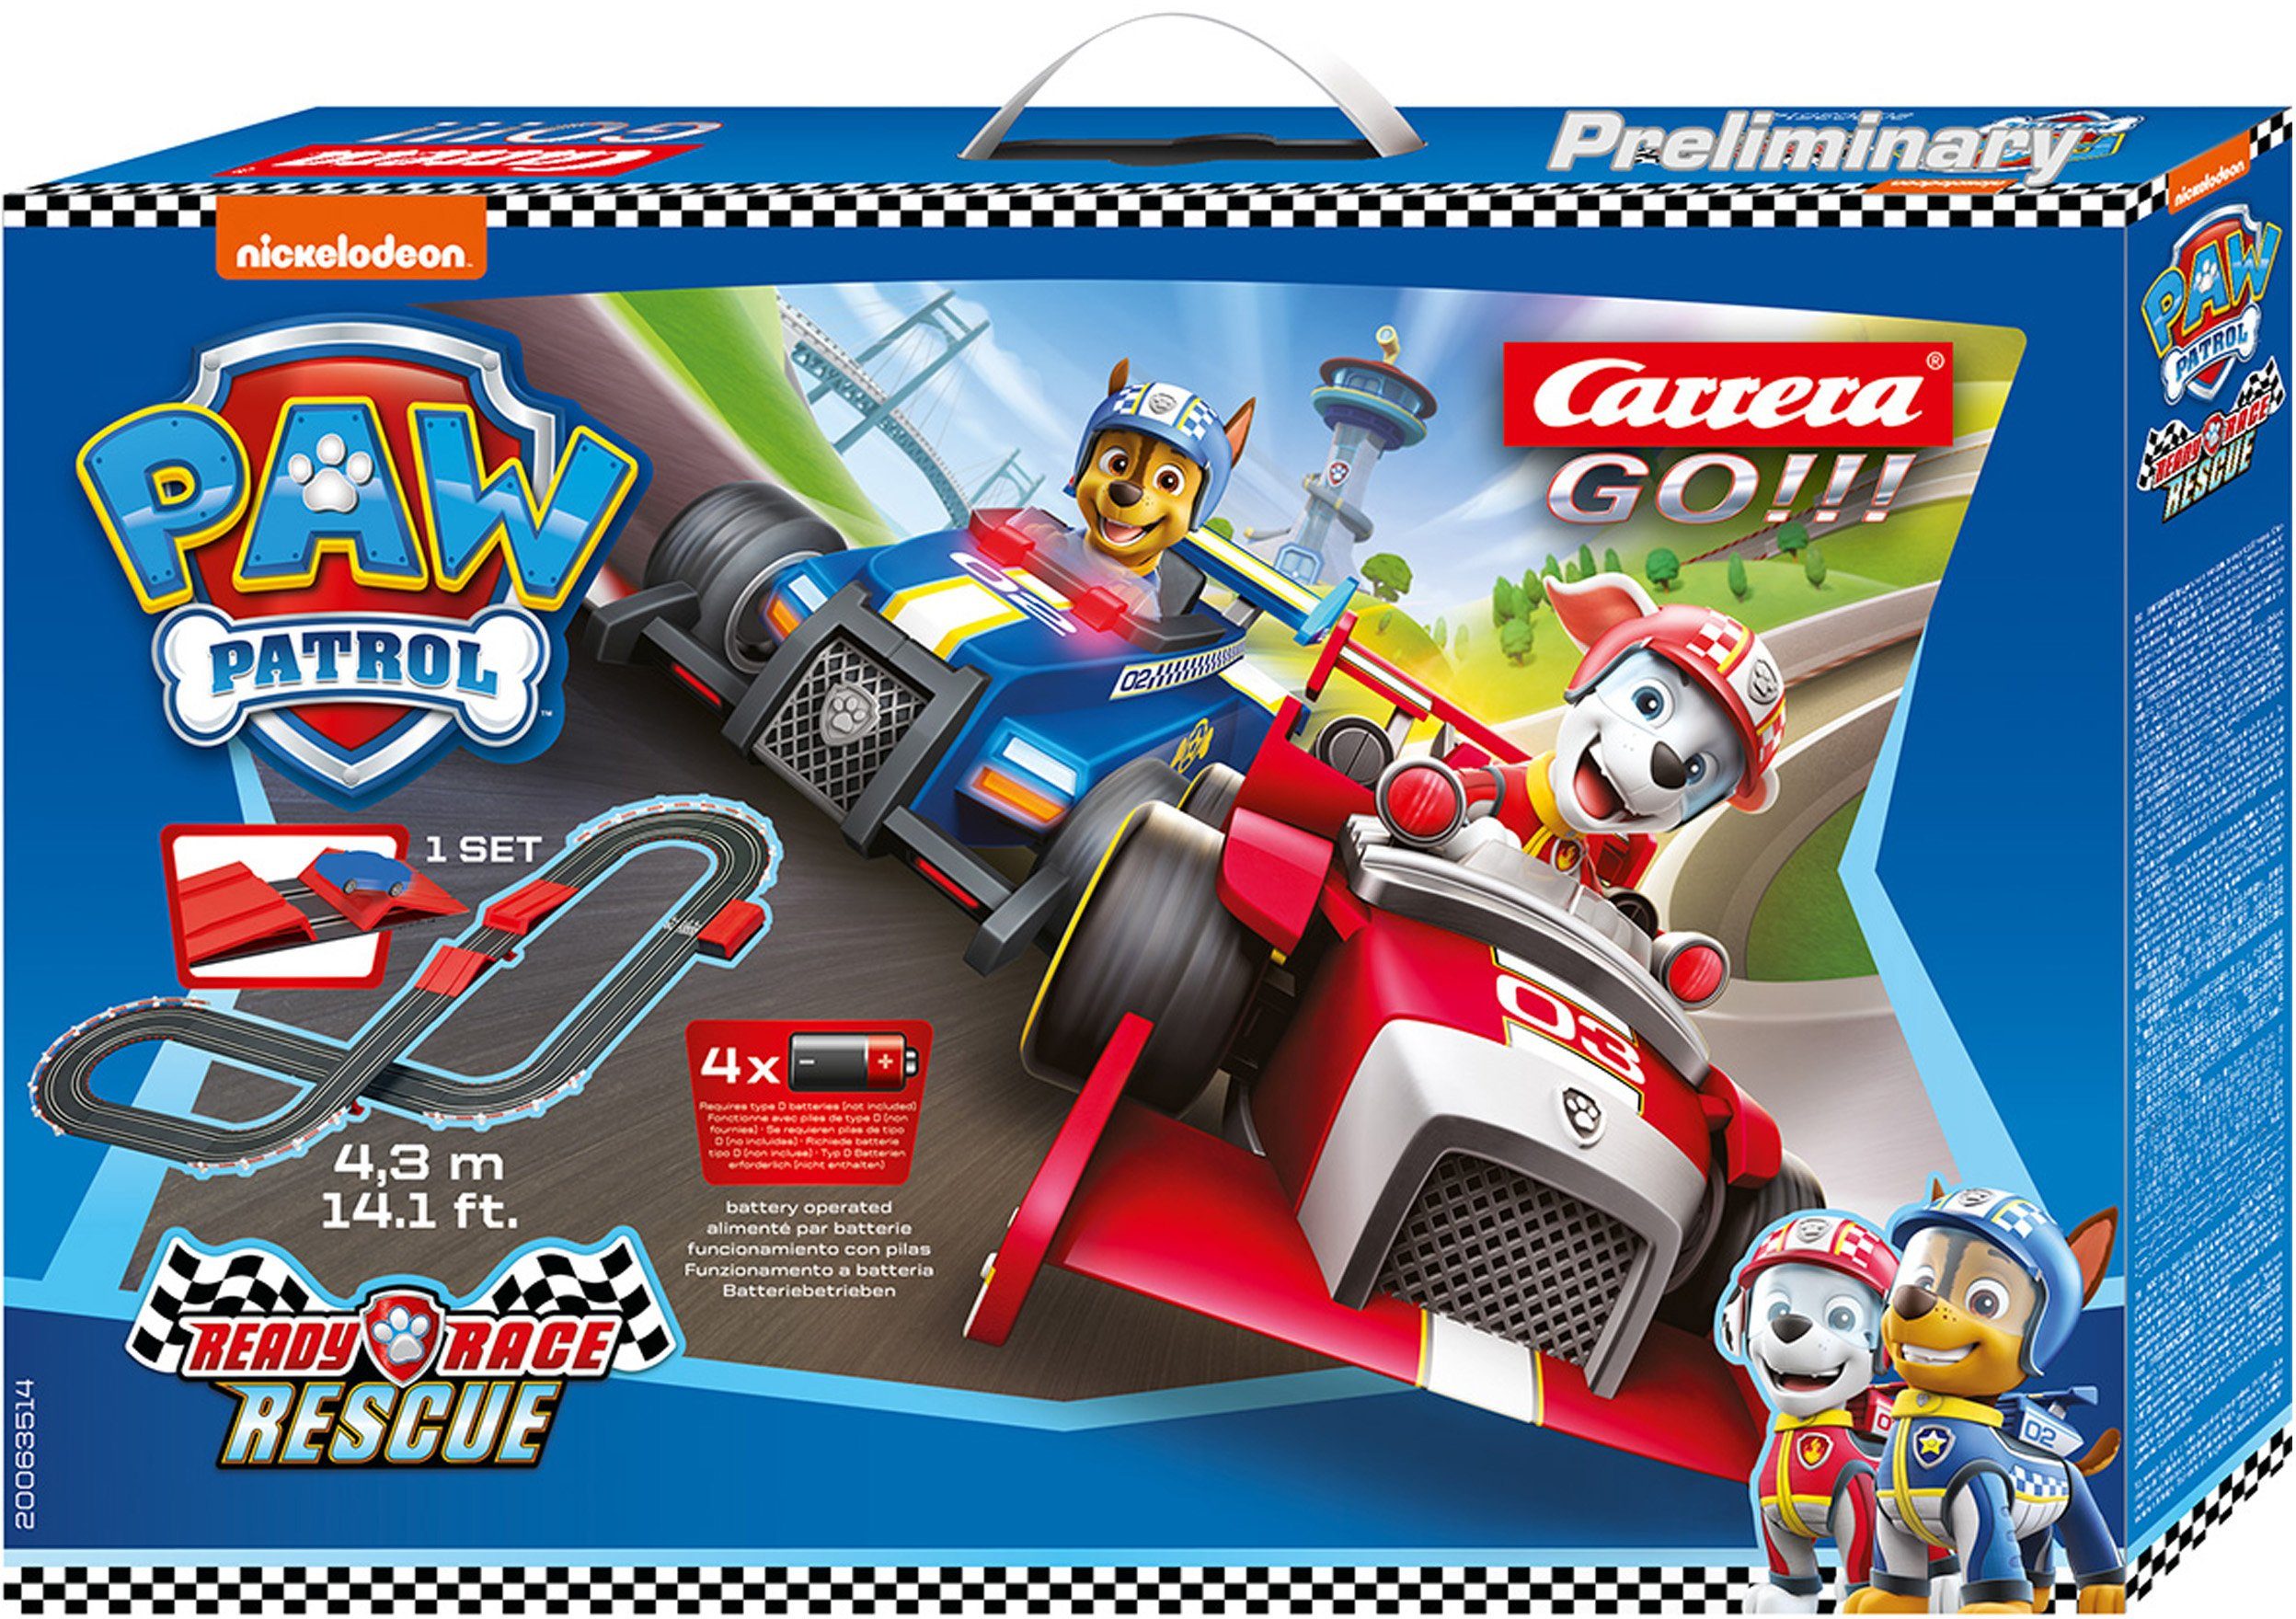 Image of CARRERA GO!!! - PAW Patrol - Ready, Race & Rescue Autorennbahn mit Chase und Marshall, Starterpaket mit Sprungschanze